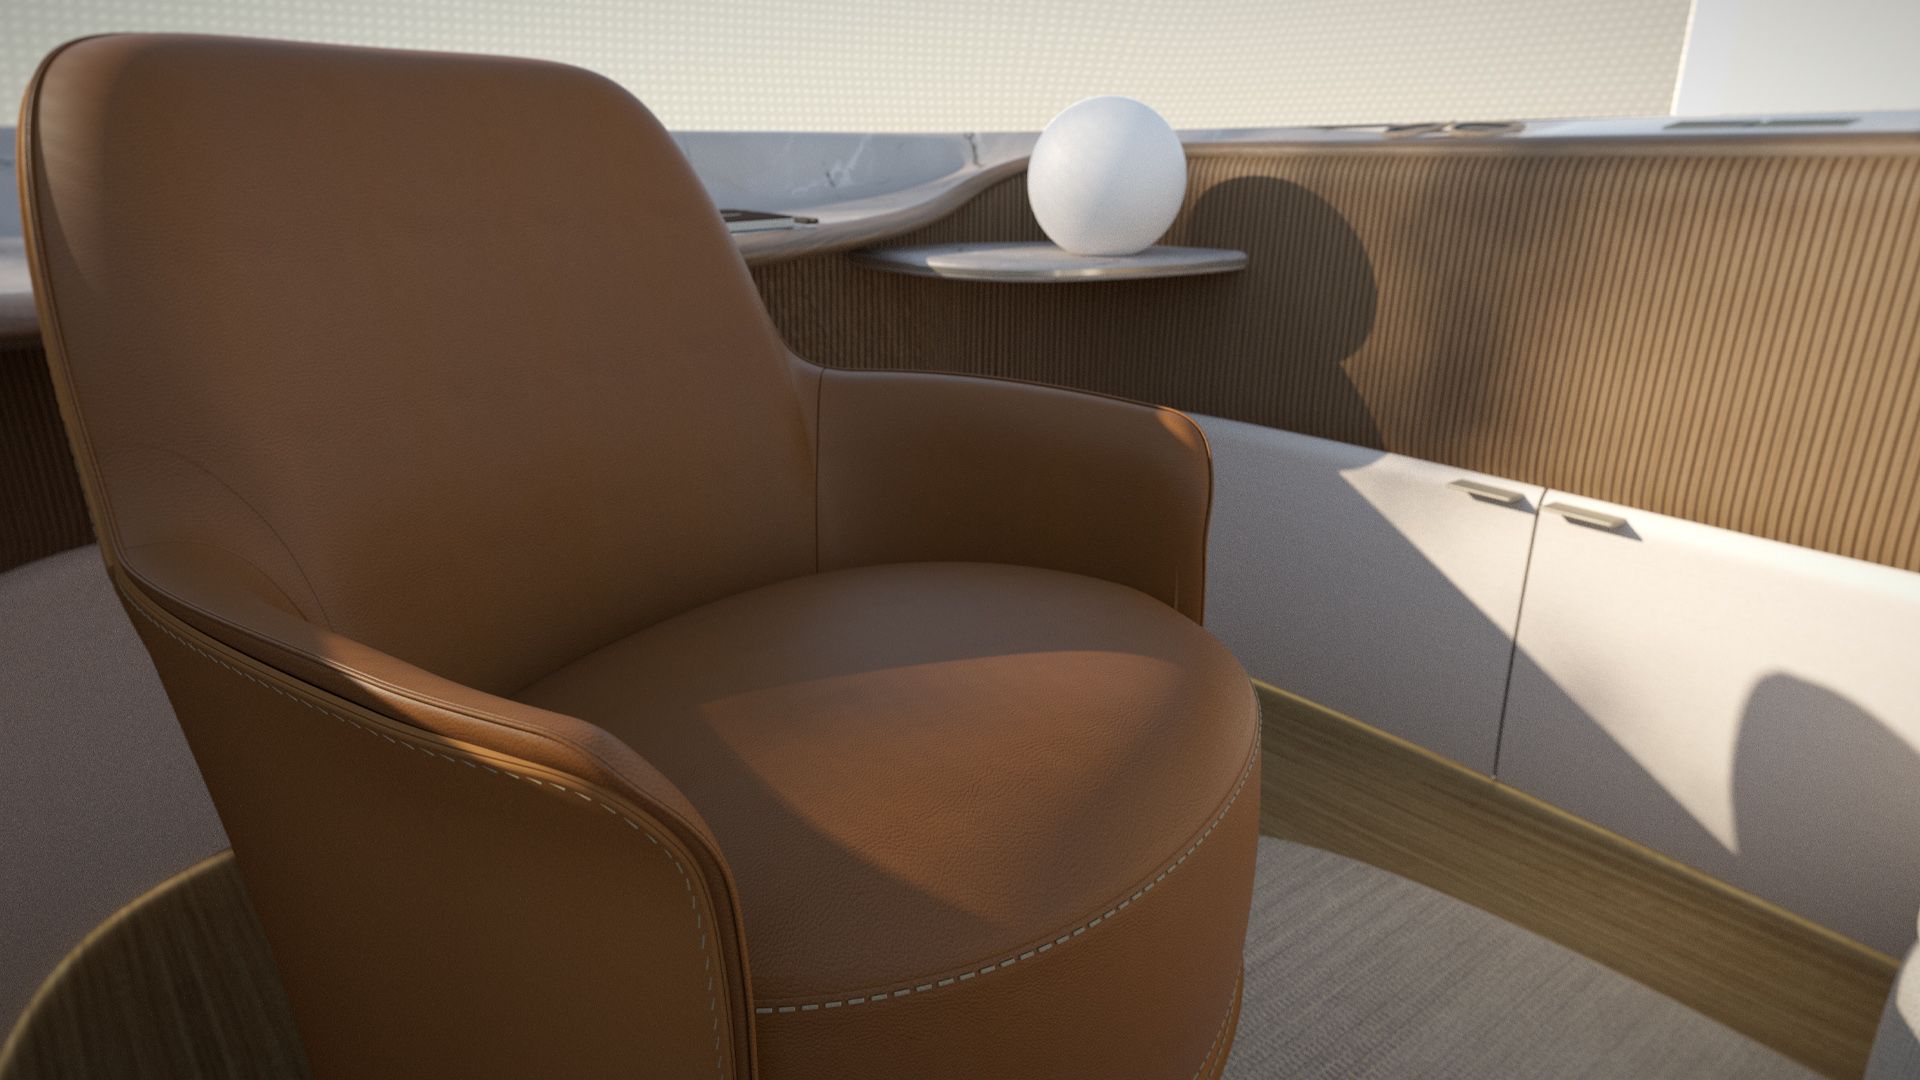 Der Interieur-Entwurf von Poliform zeigt einen braunen Sessel.